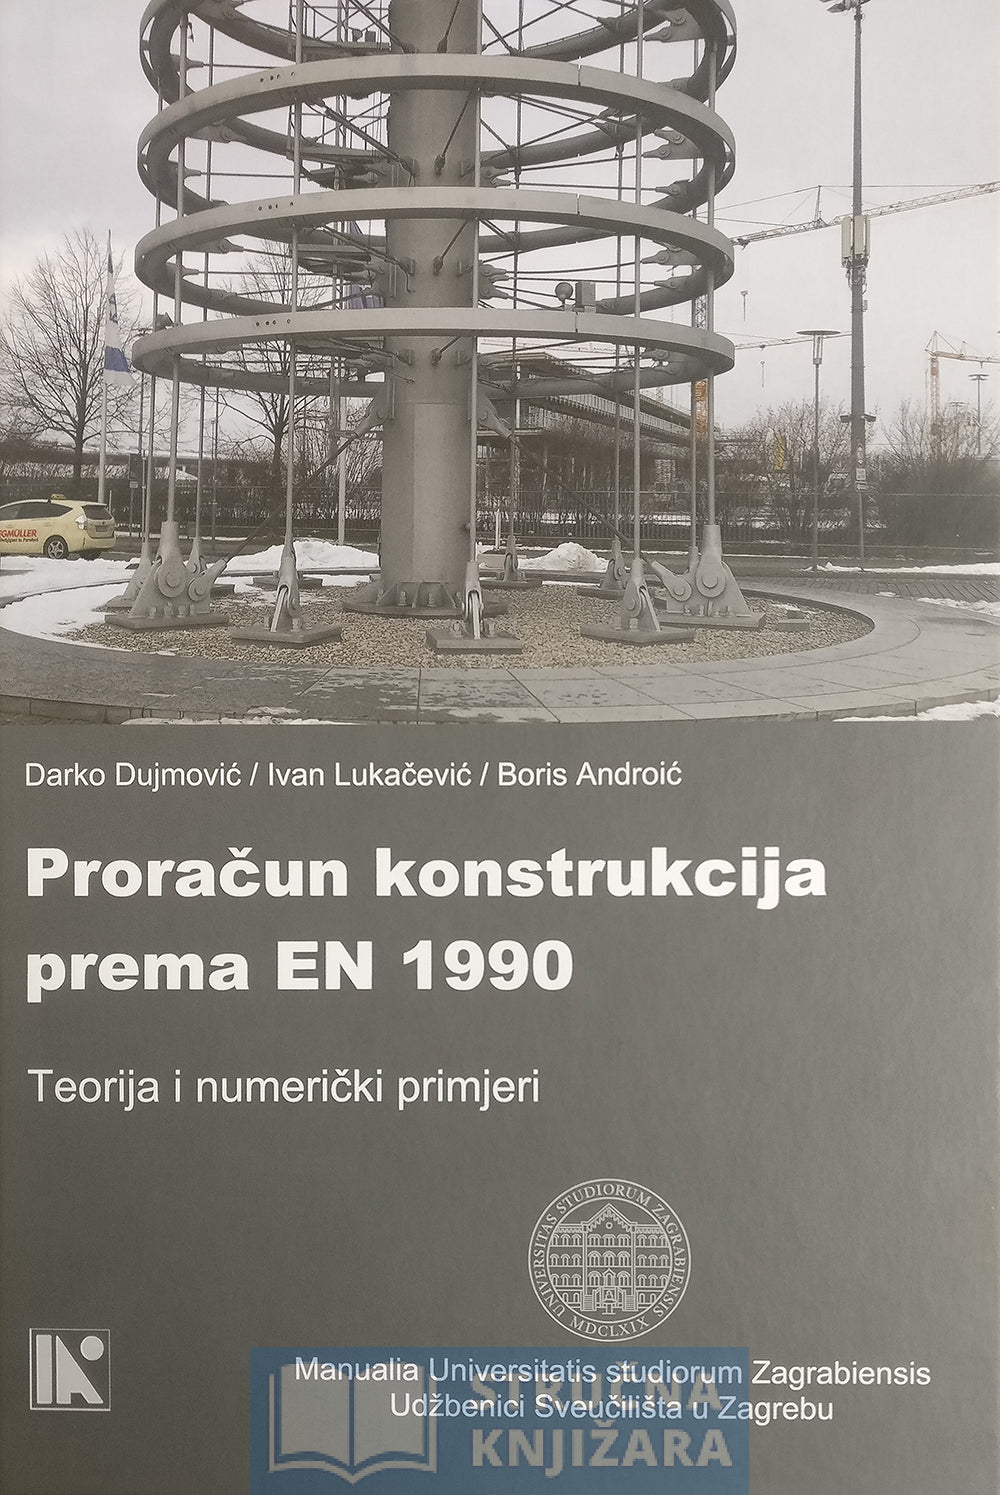 Proračun konstrukcija prema EN 1990 - Teorija i Numerički primjeri - Darko Dujmović, Ivan Lukačević i Boris Androić